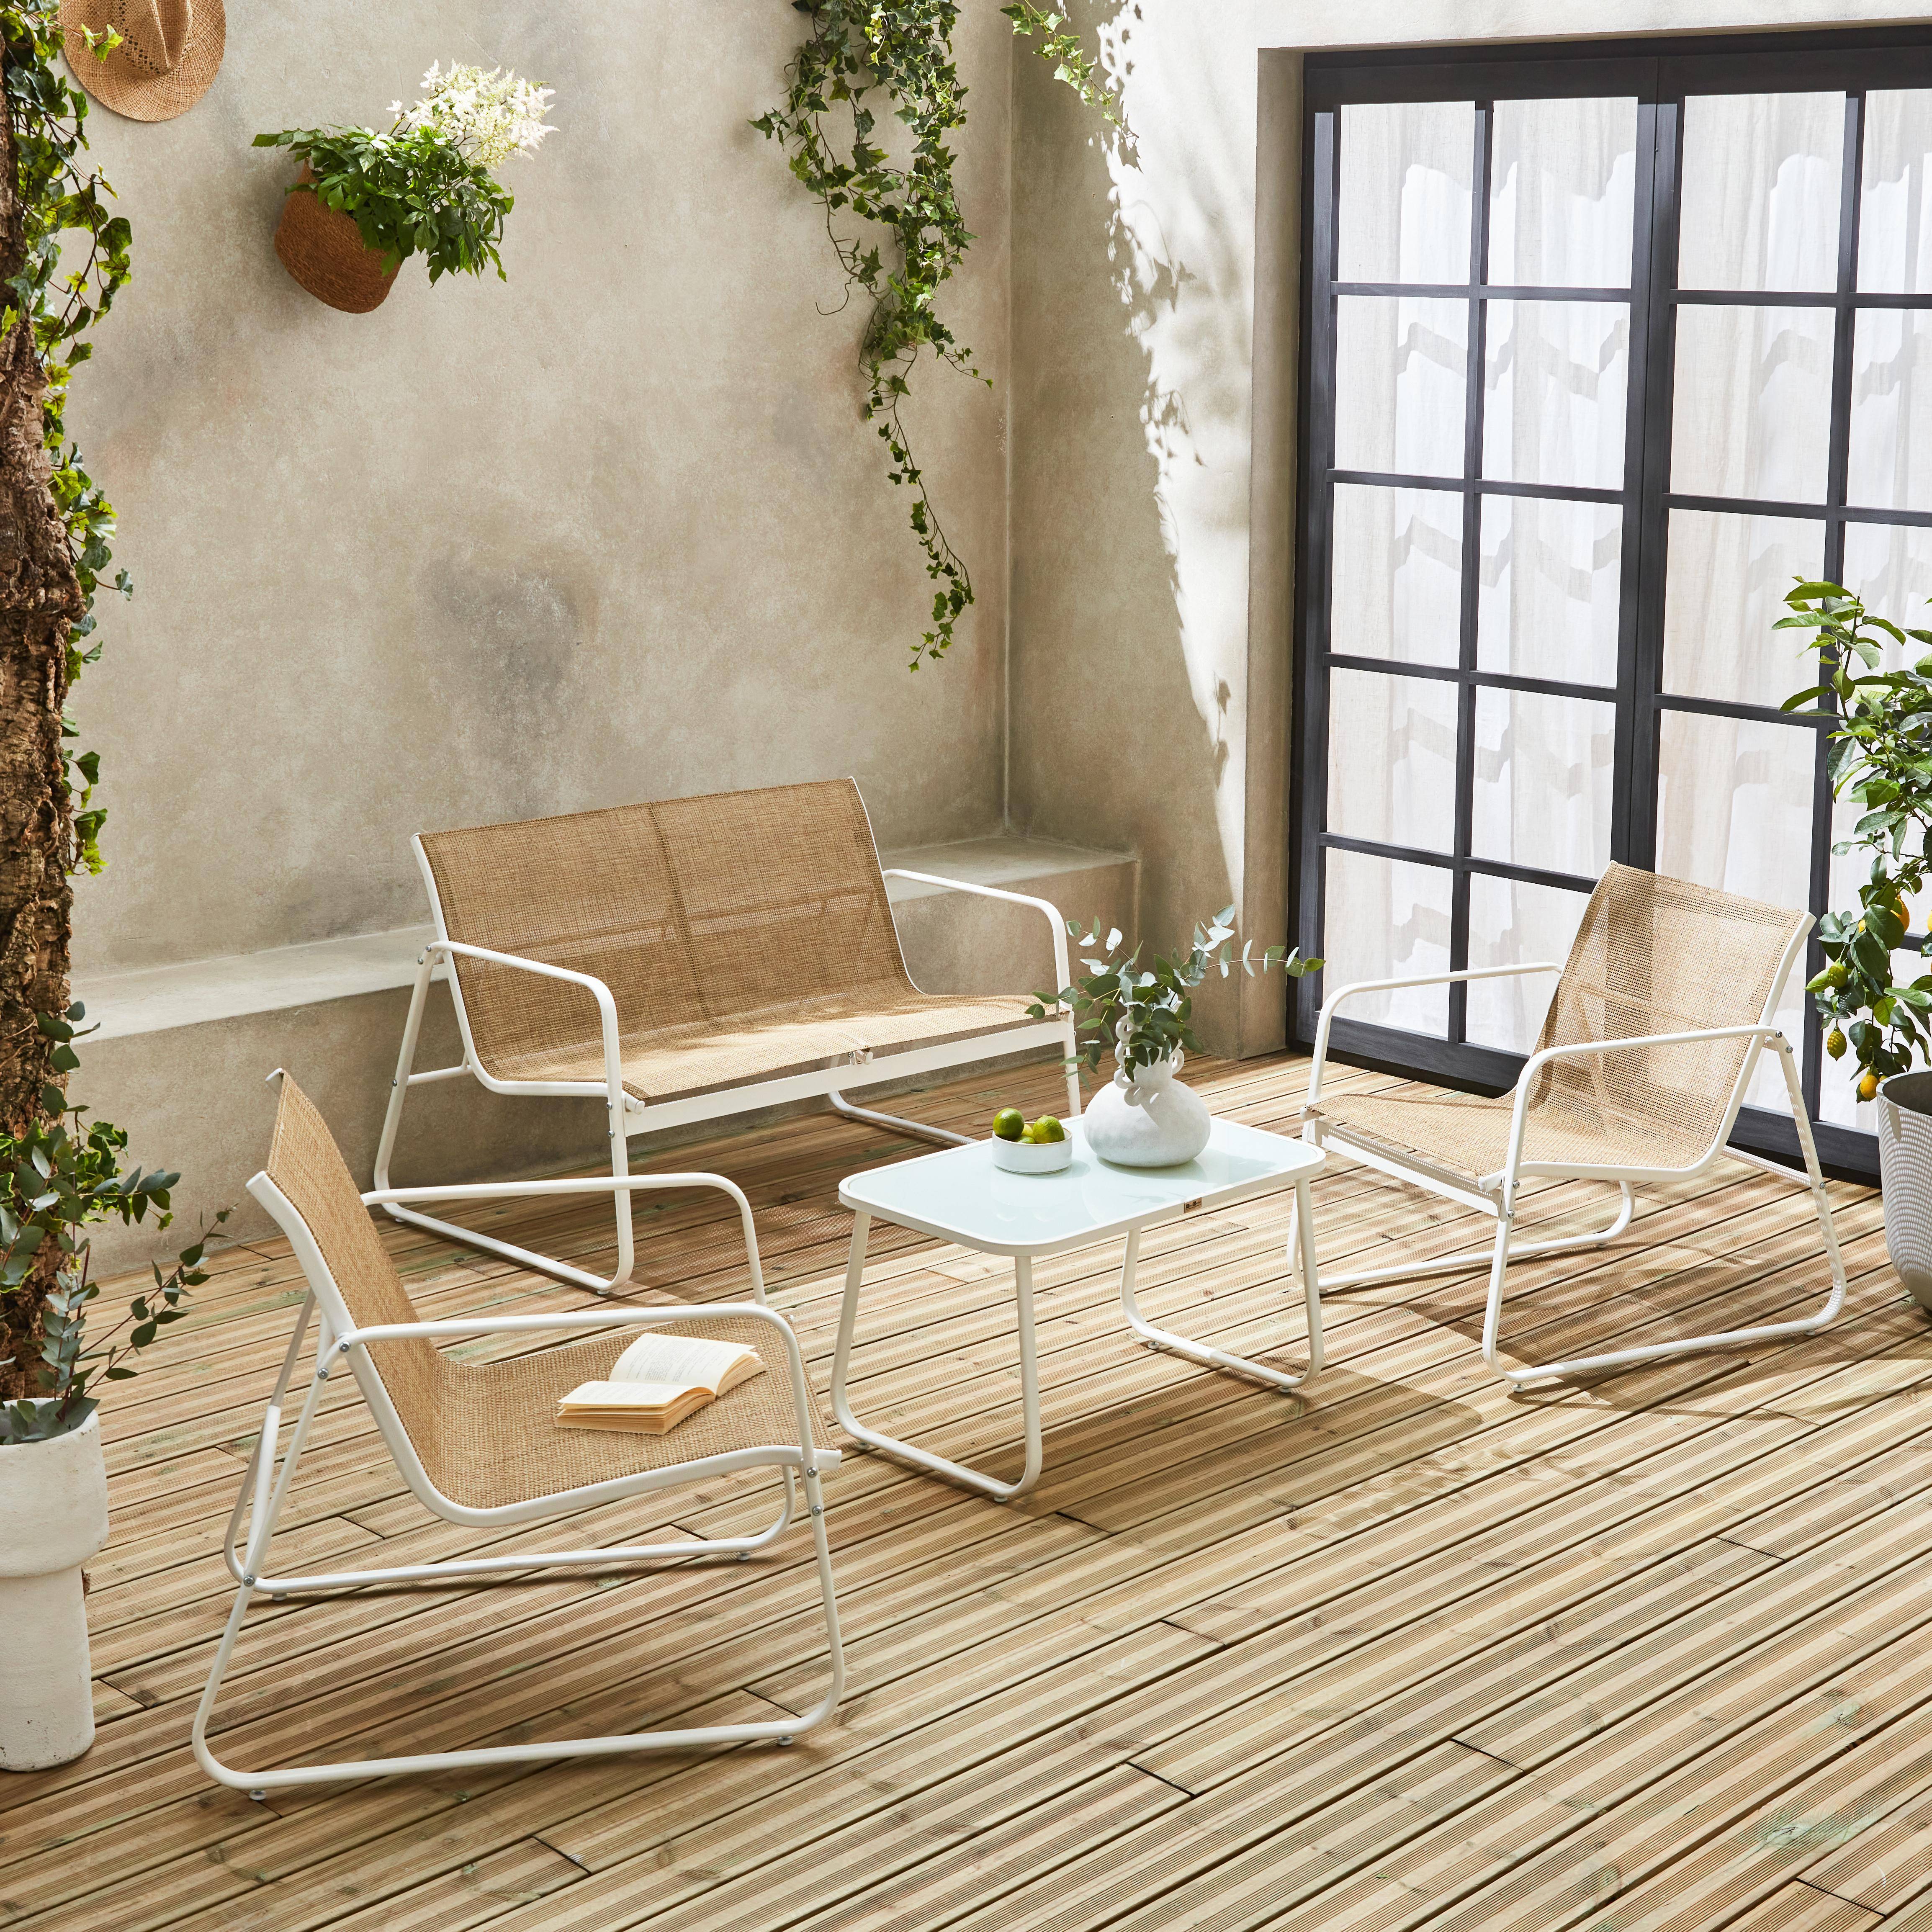 Mobiliario de jardín de metal y textilene para 4 personas, blanco y natural, diseño Photo1